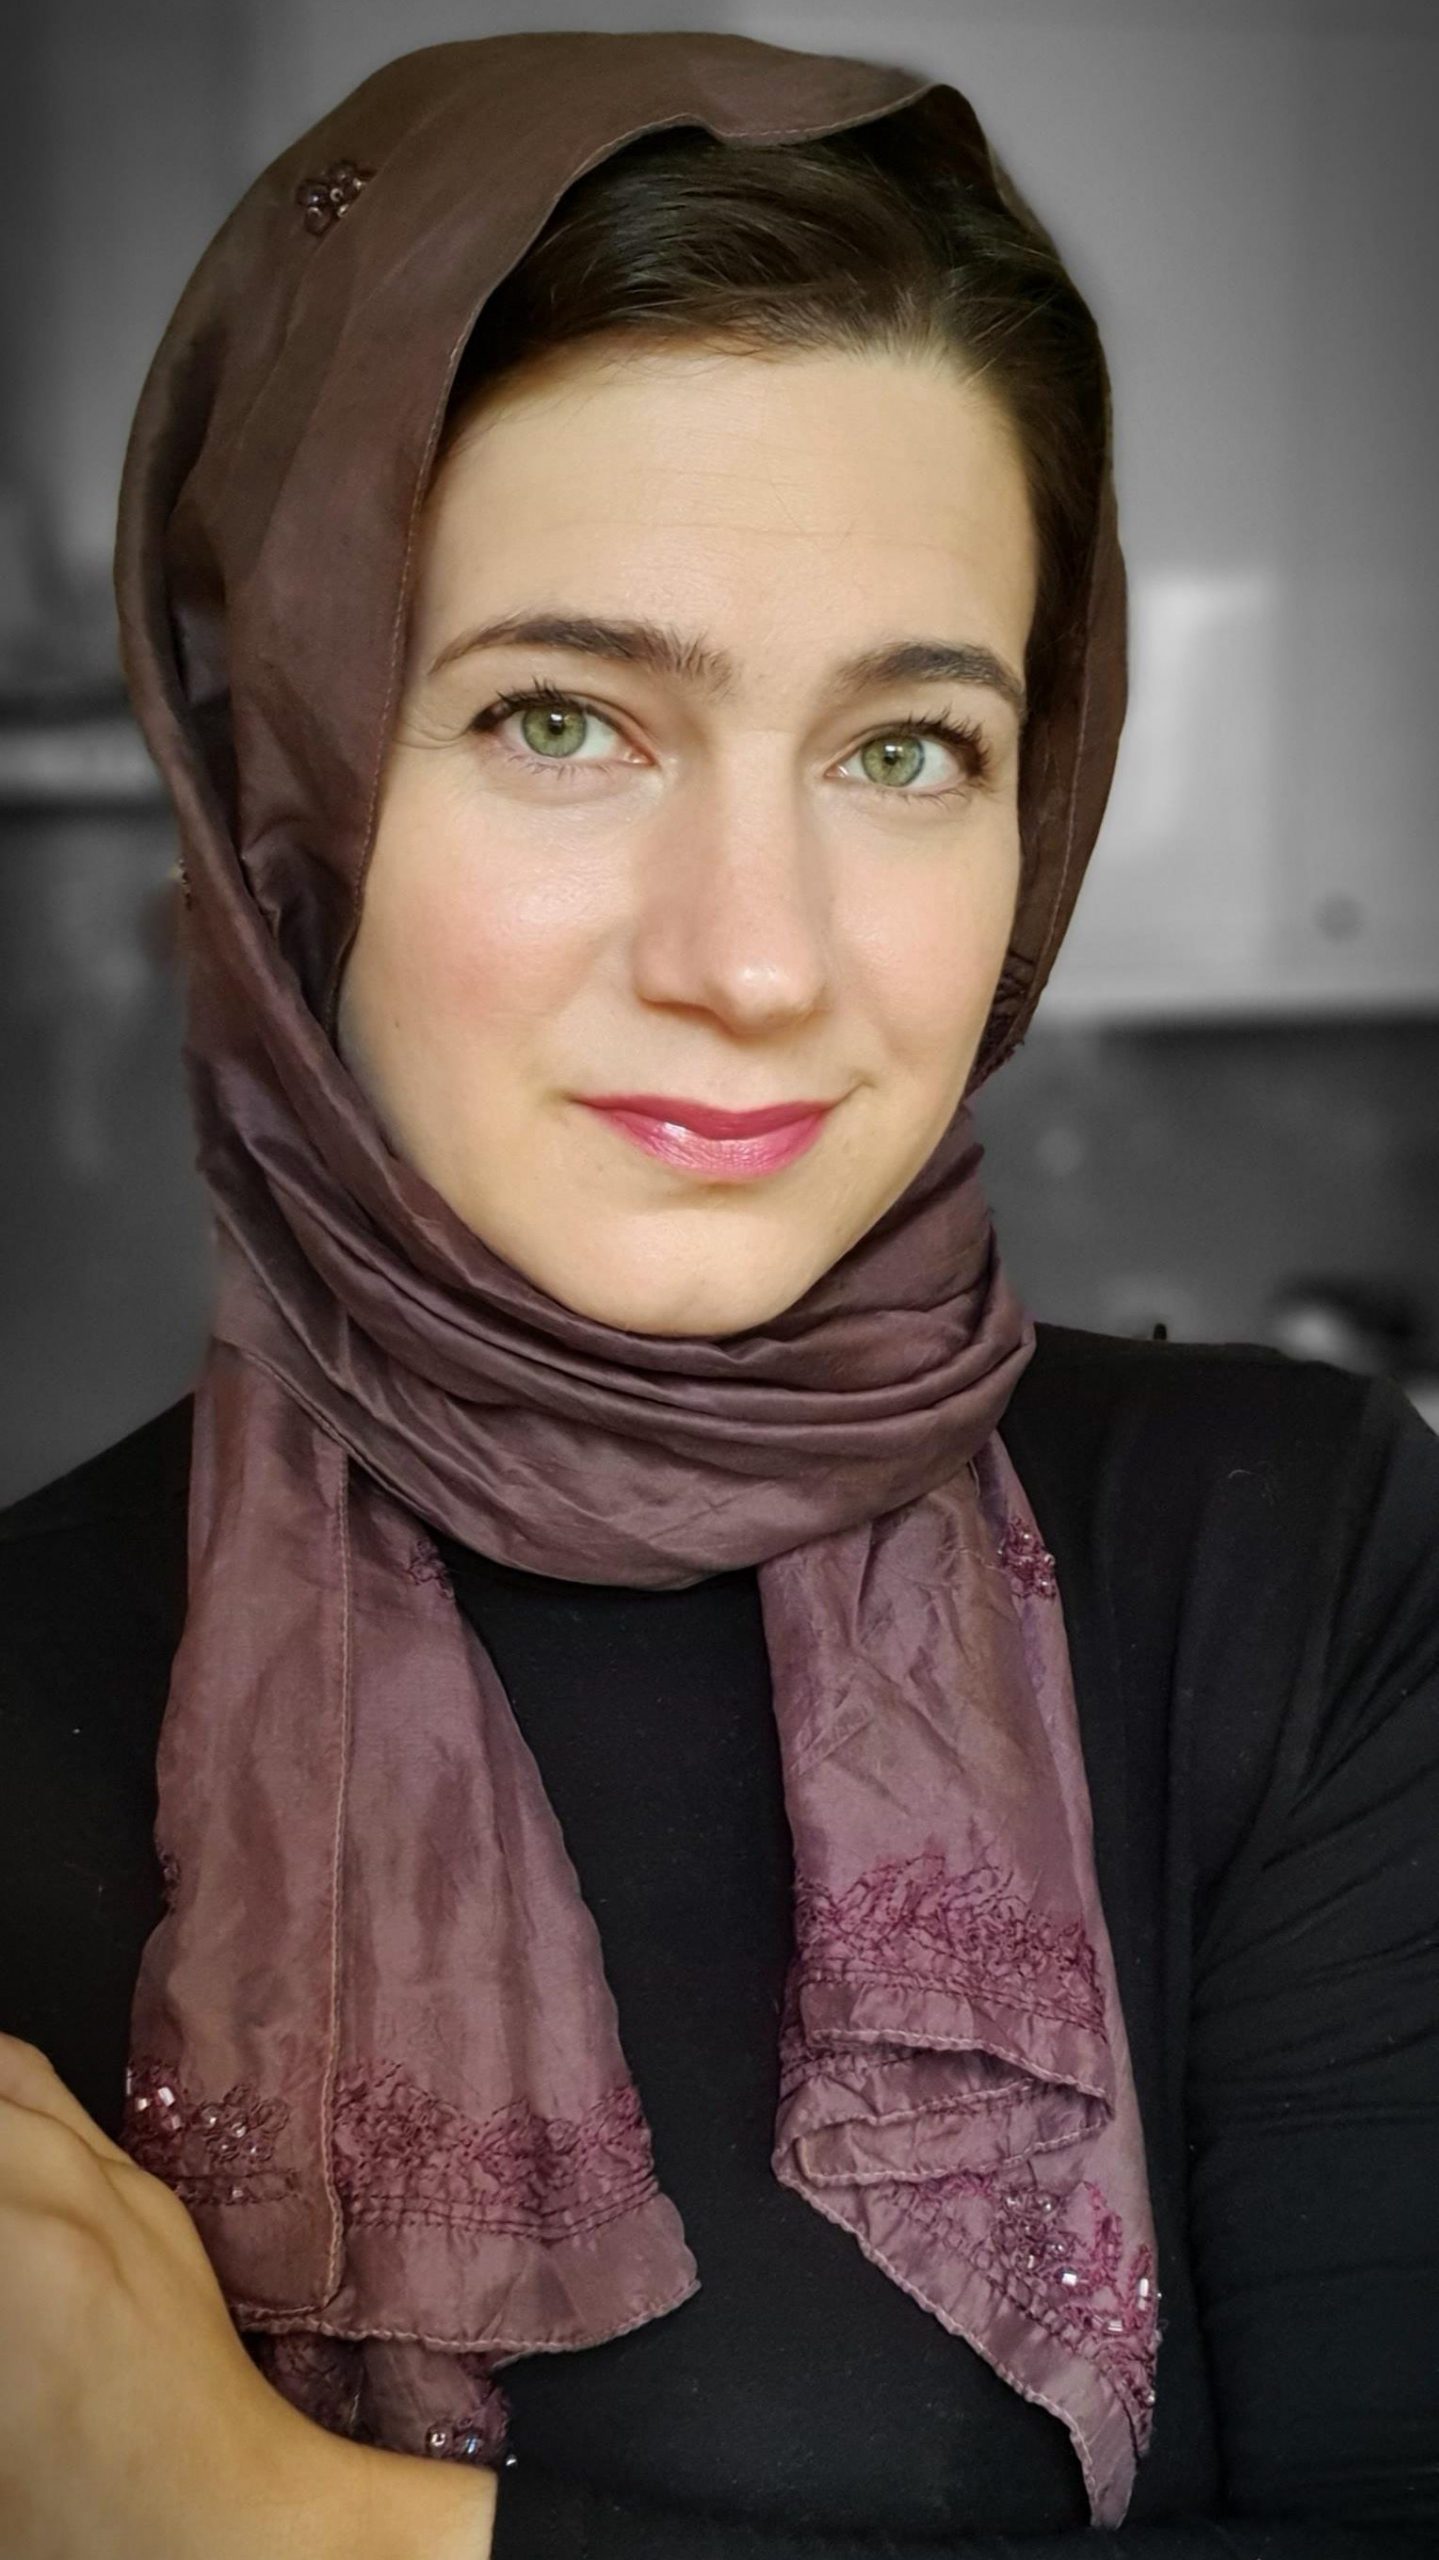 Zainab Yate, author of When Breastfeeding Sucks